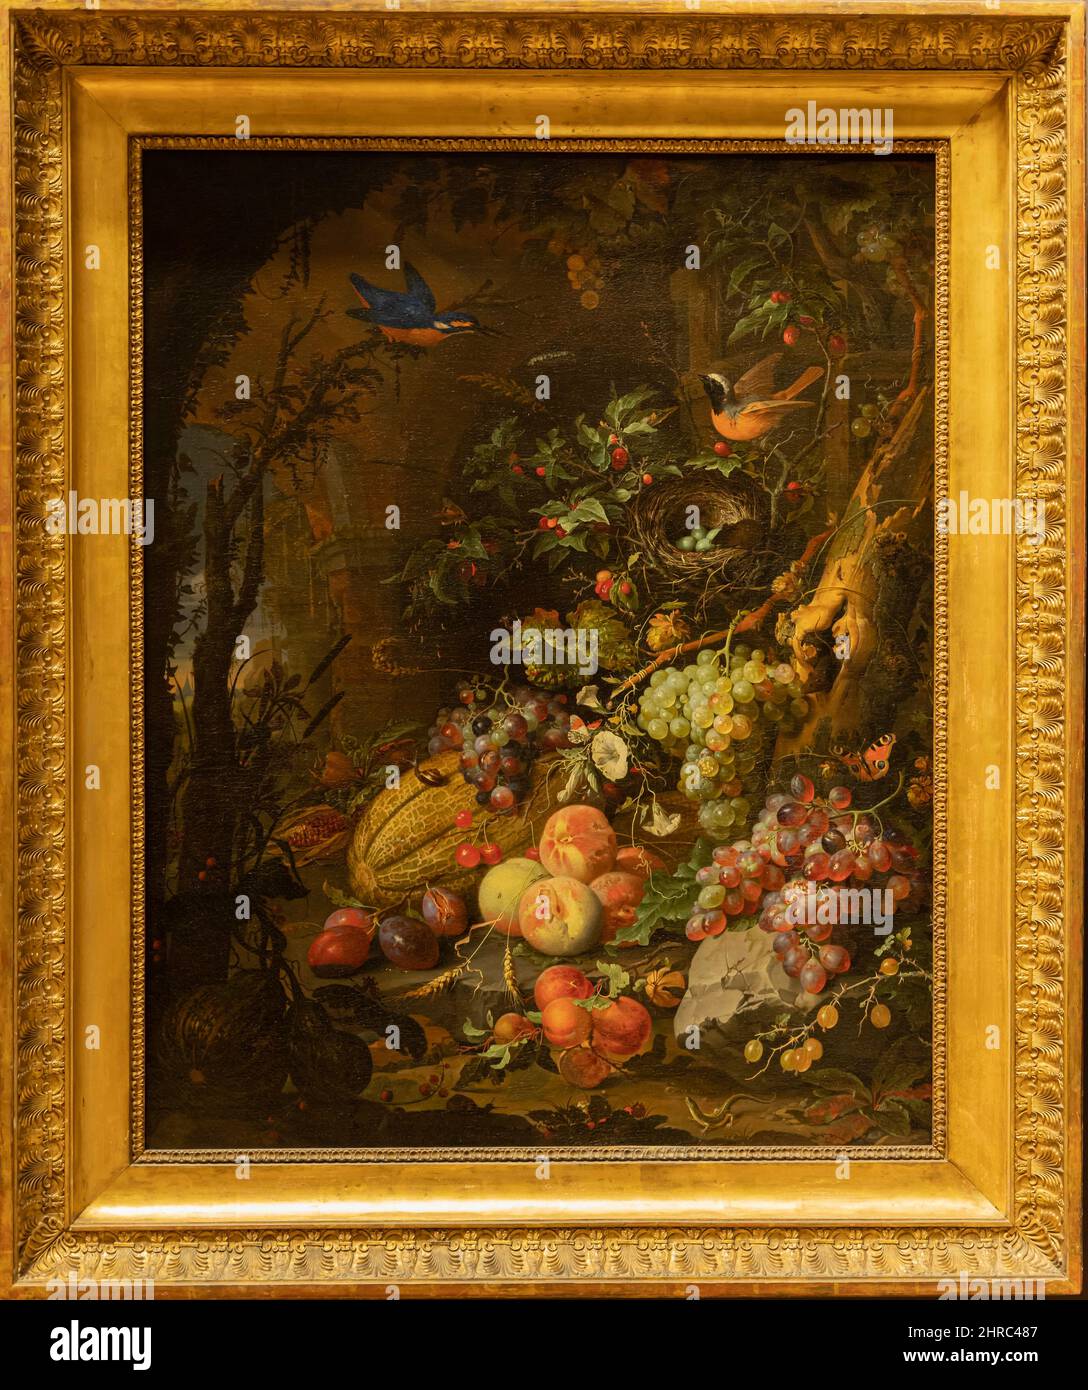 Musée du Louvre. Fleurs, fruits, oiseaux et insectes sur fond de ruines, avec une souris entrant dans un nid peint par Abraham Mignon Banque D'Images